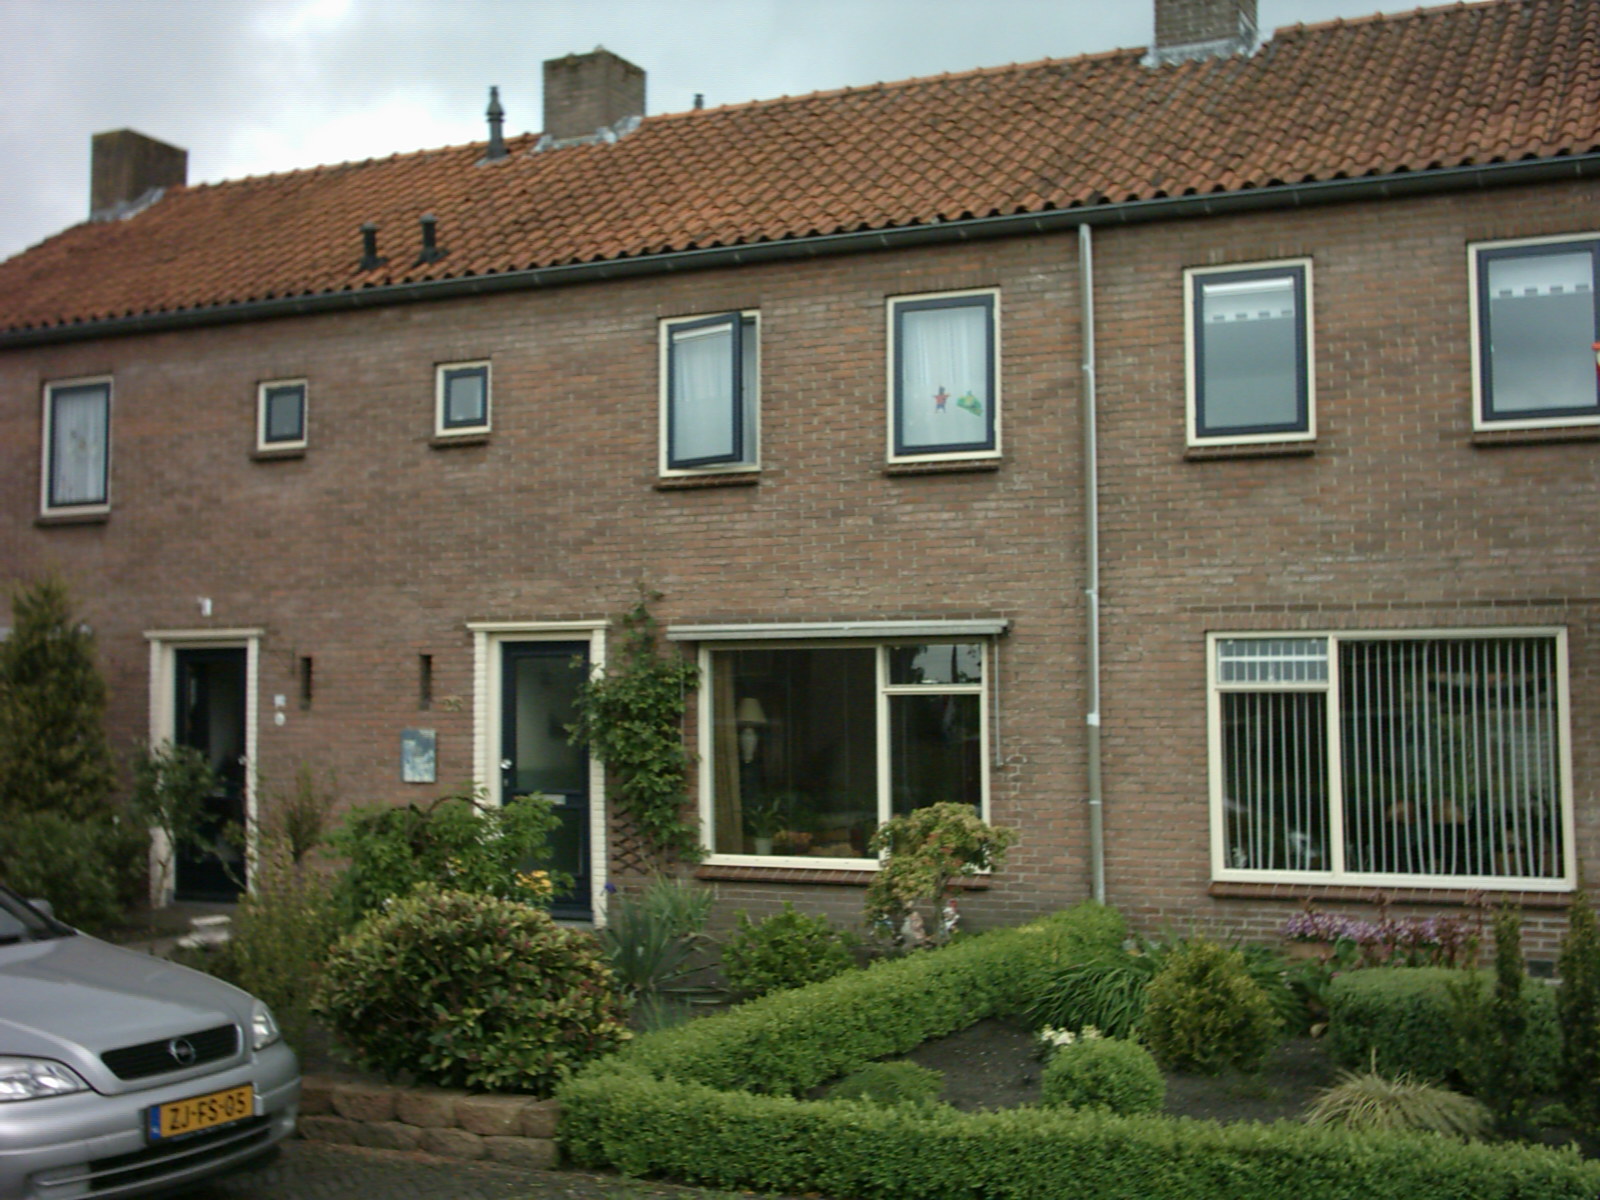 Julianalaan 26, 7211 GT Eefde, Nederland